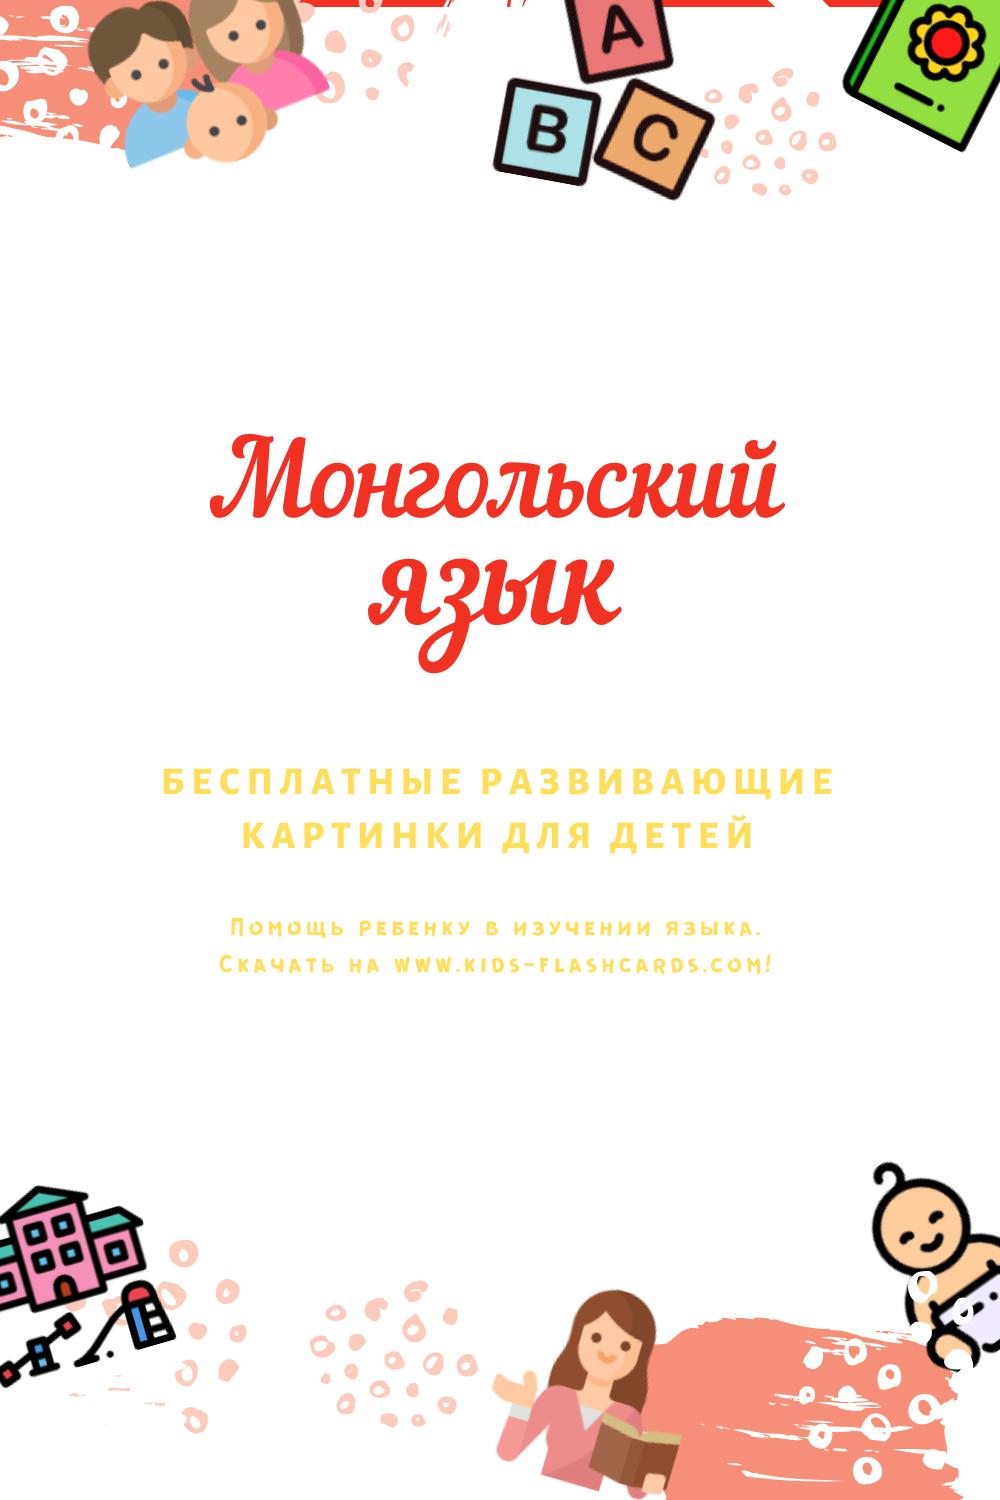 Монгольский язык - бесплатные материалы для печати